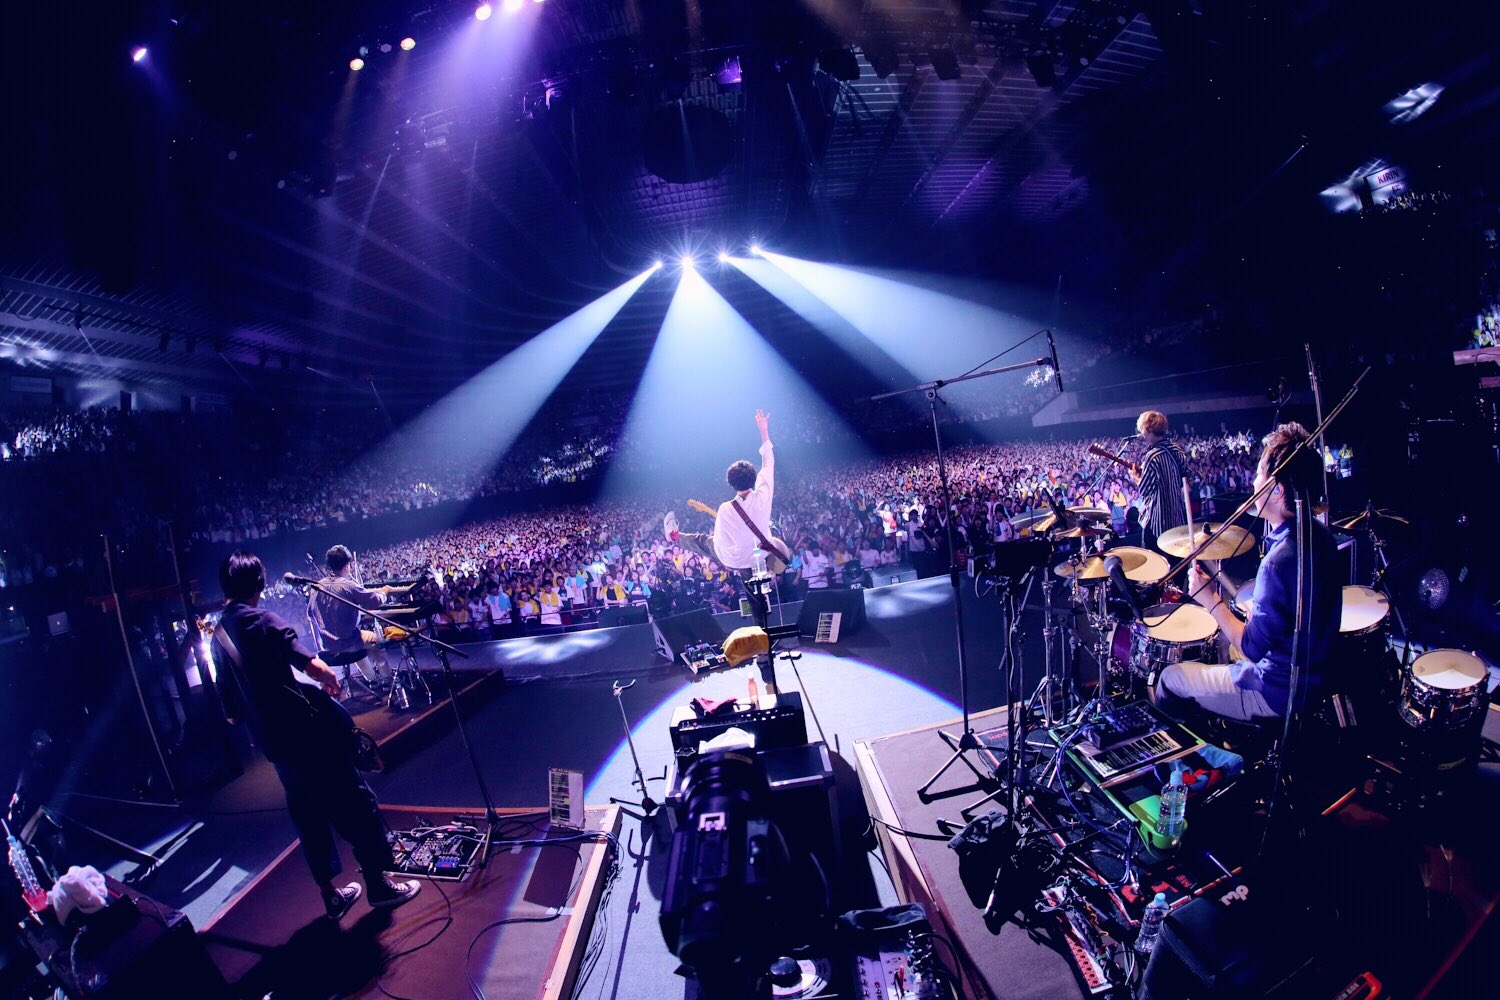 Sumika Chime Release Tour 6月30日 大阪城ホールday2 公演終了 ファイナルにこの地を選んだ事は間違いじゃなかったです 無事に今日を迎えられたのは 紛れもなく皆さんのおかげだと感謝しています 本当にありがとうございました 撮影